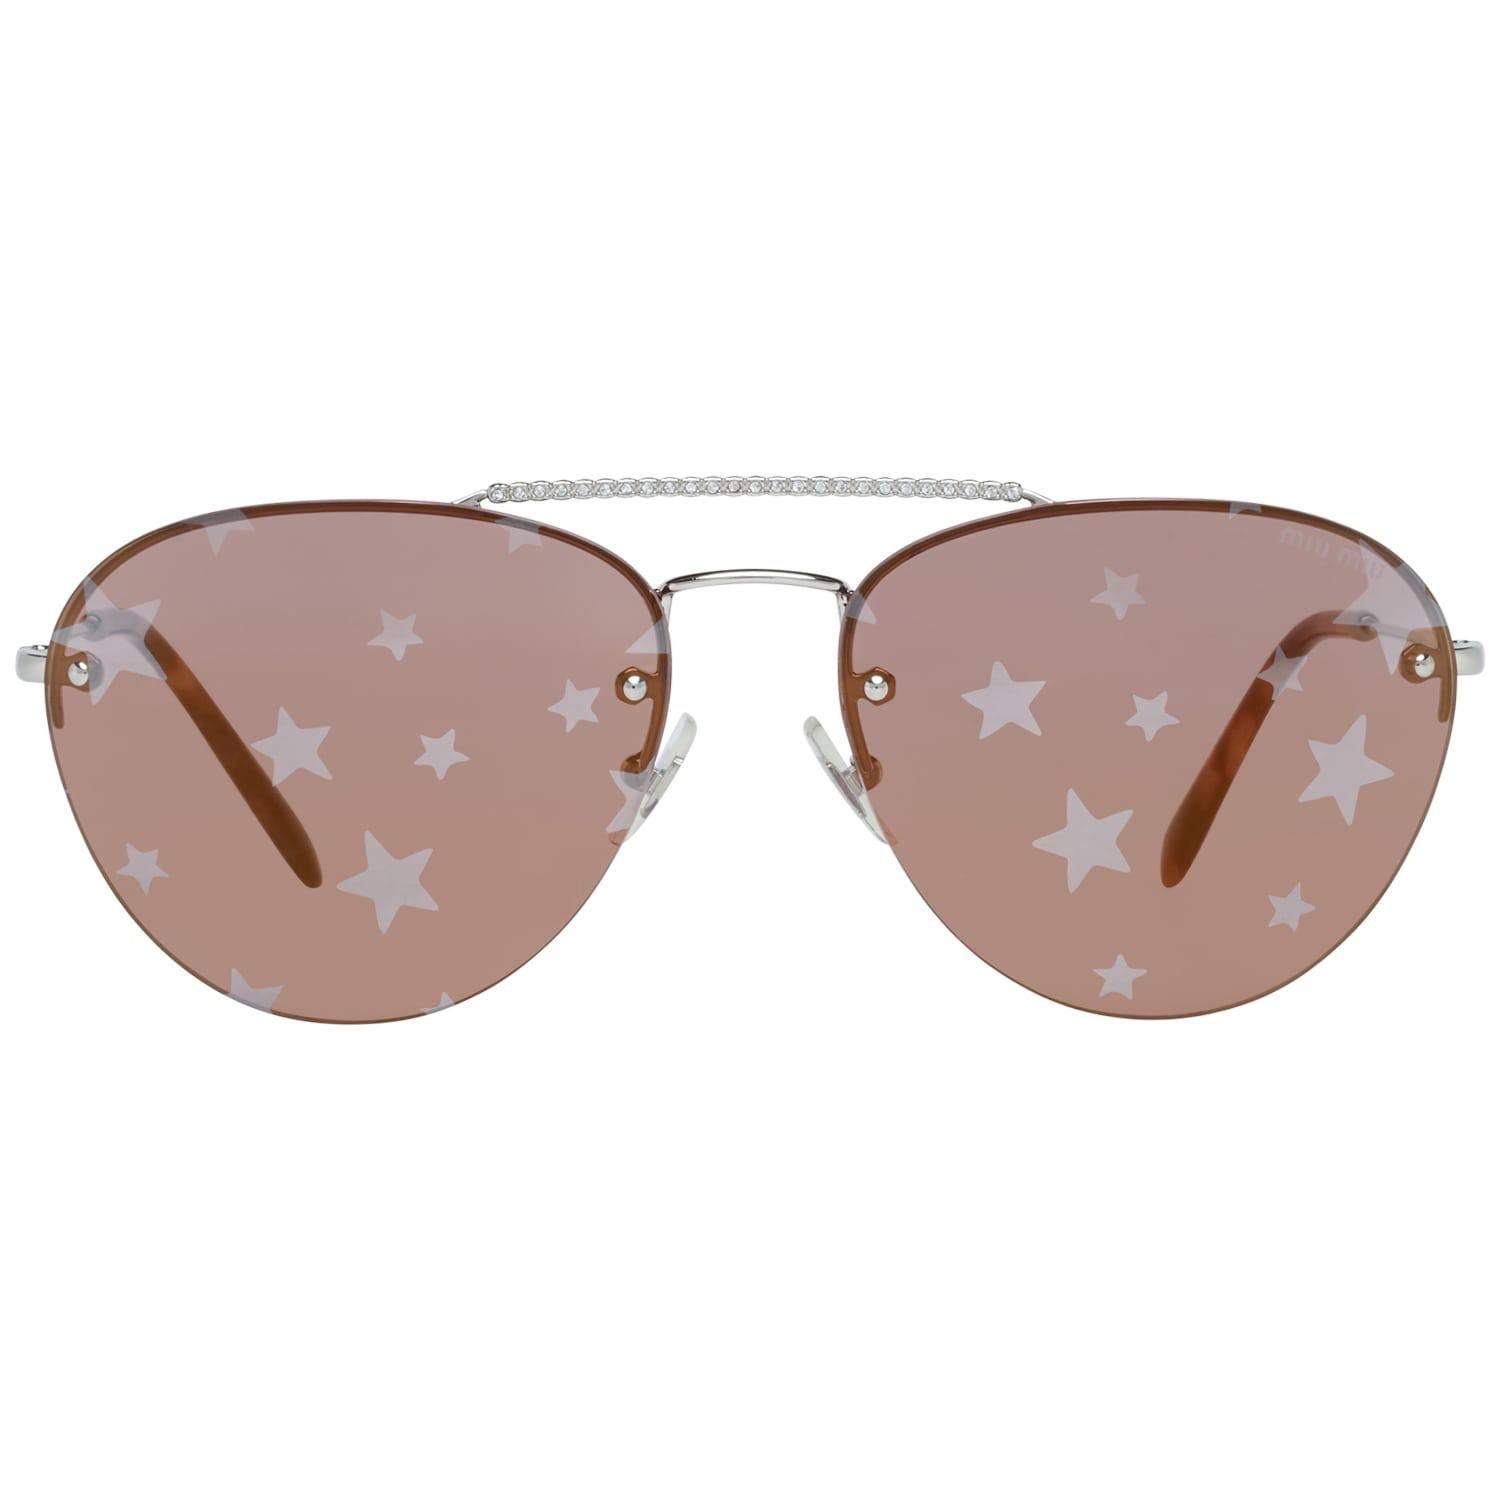 Miu Miu Mint Women Silver Sunglasses MU54US 1BC19559 59-15-138 mm